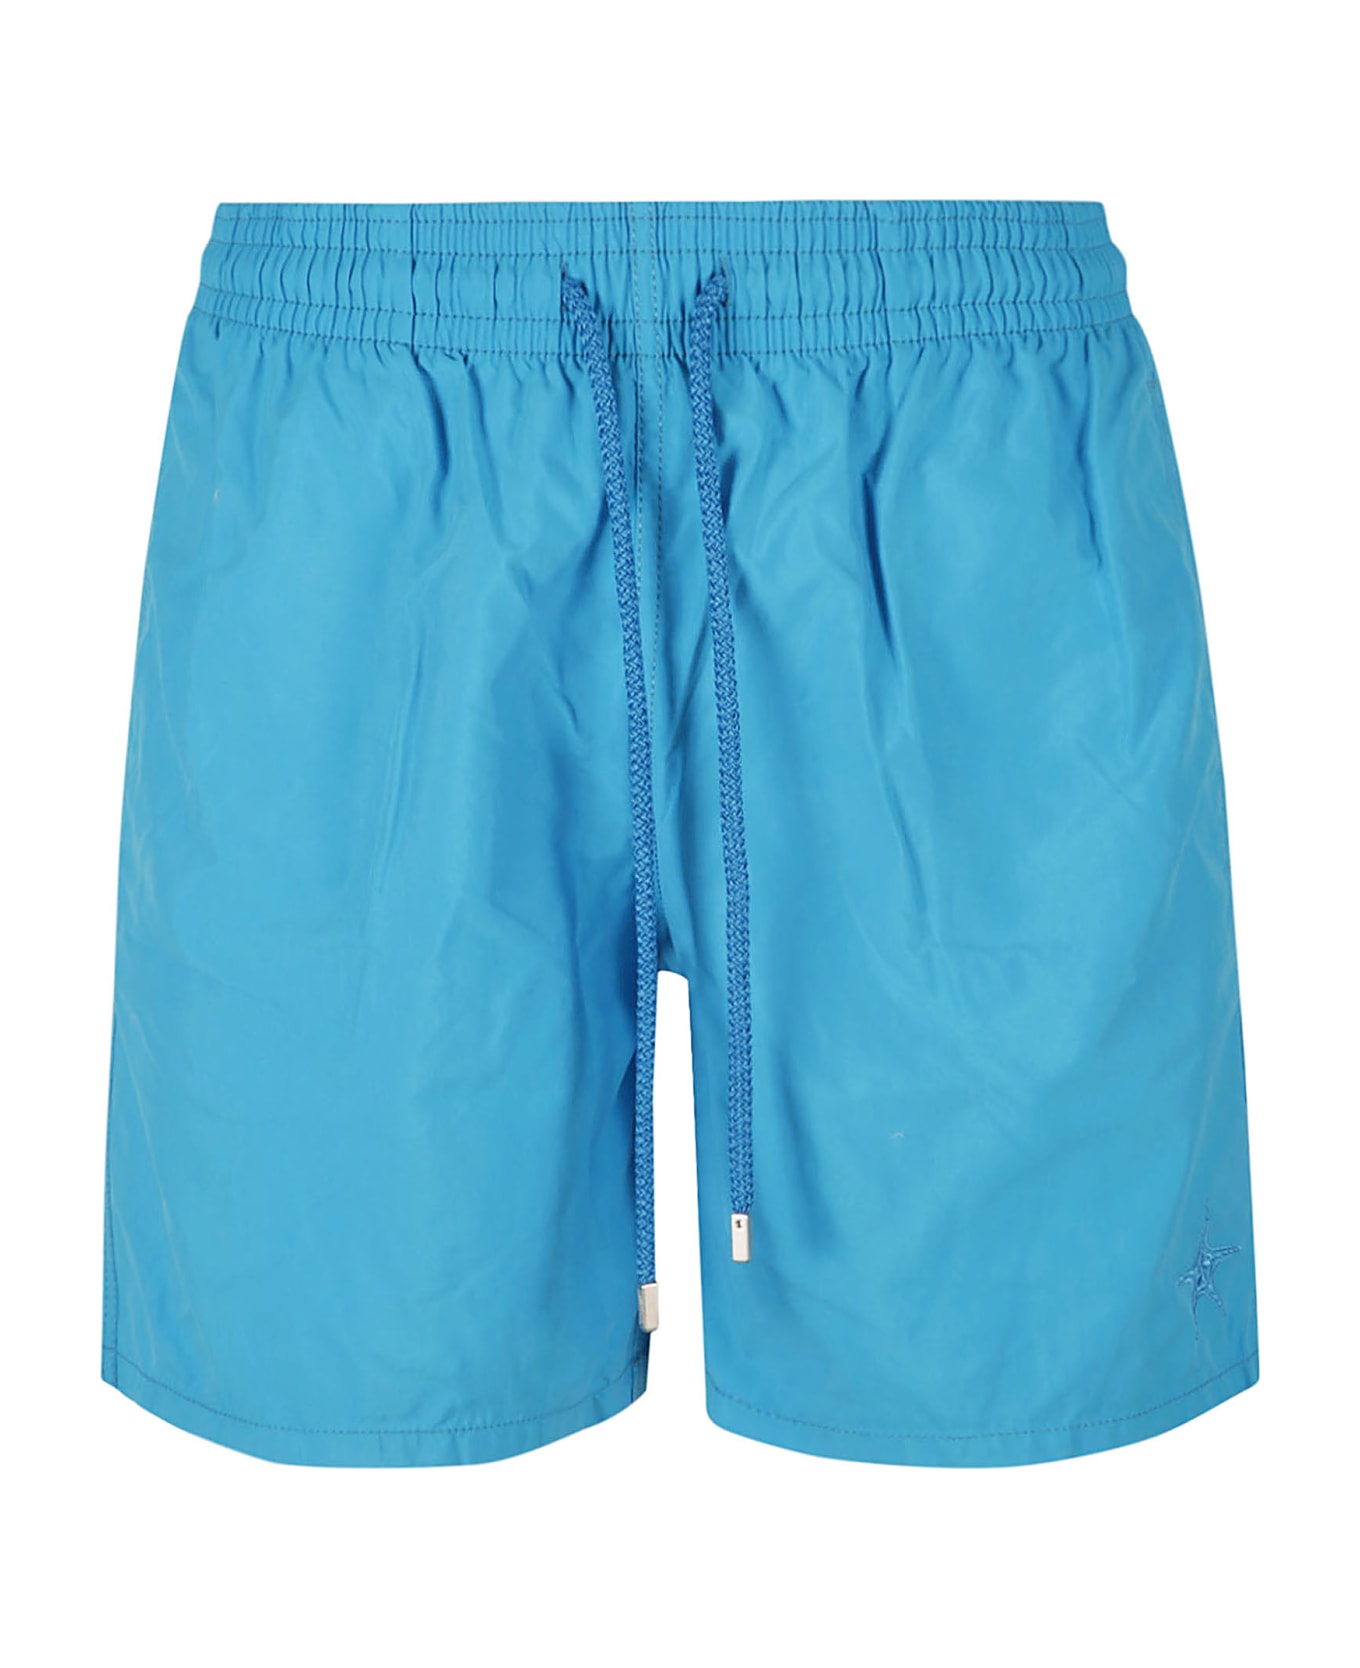 Vilebrequin Moorea Shorts - Blue Hawaii